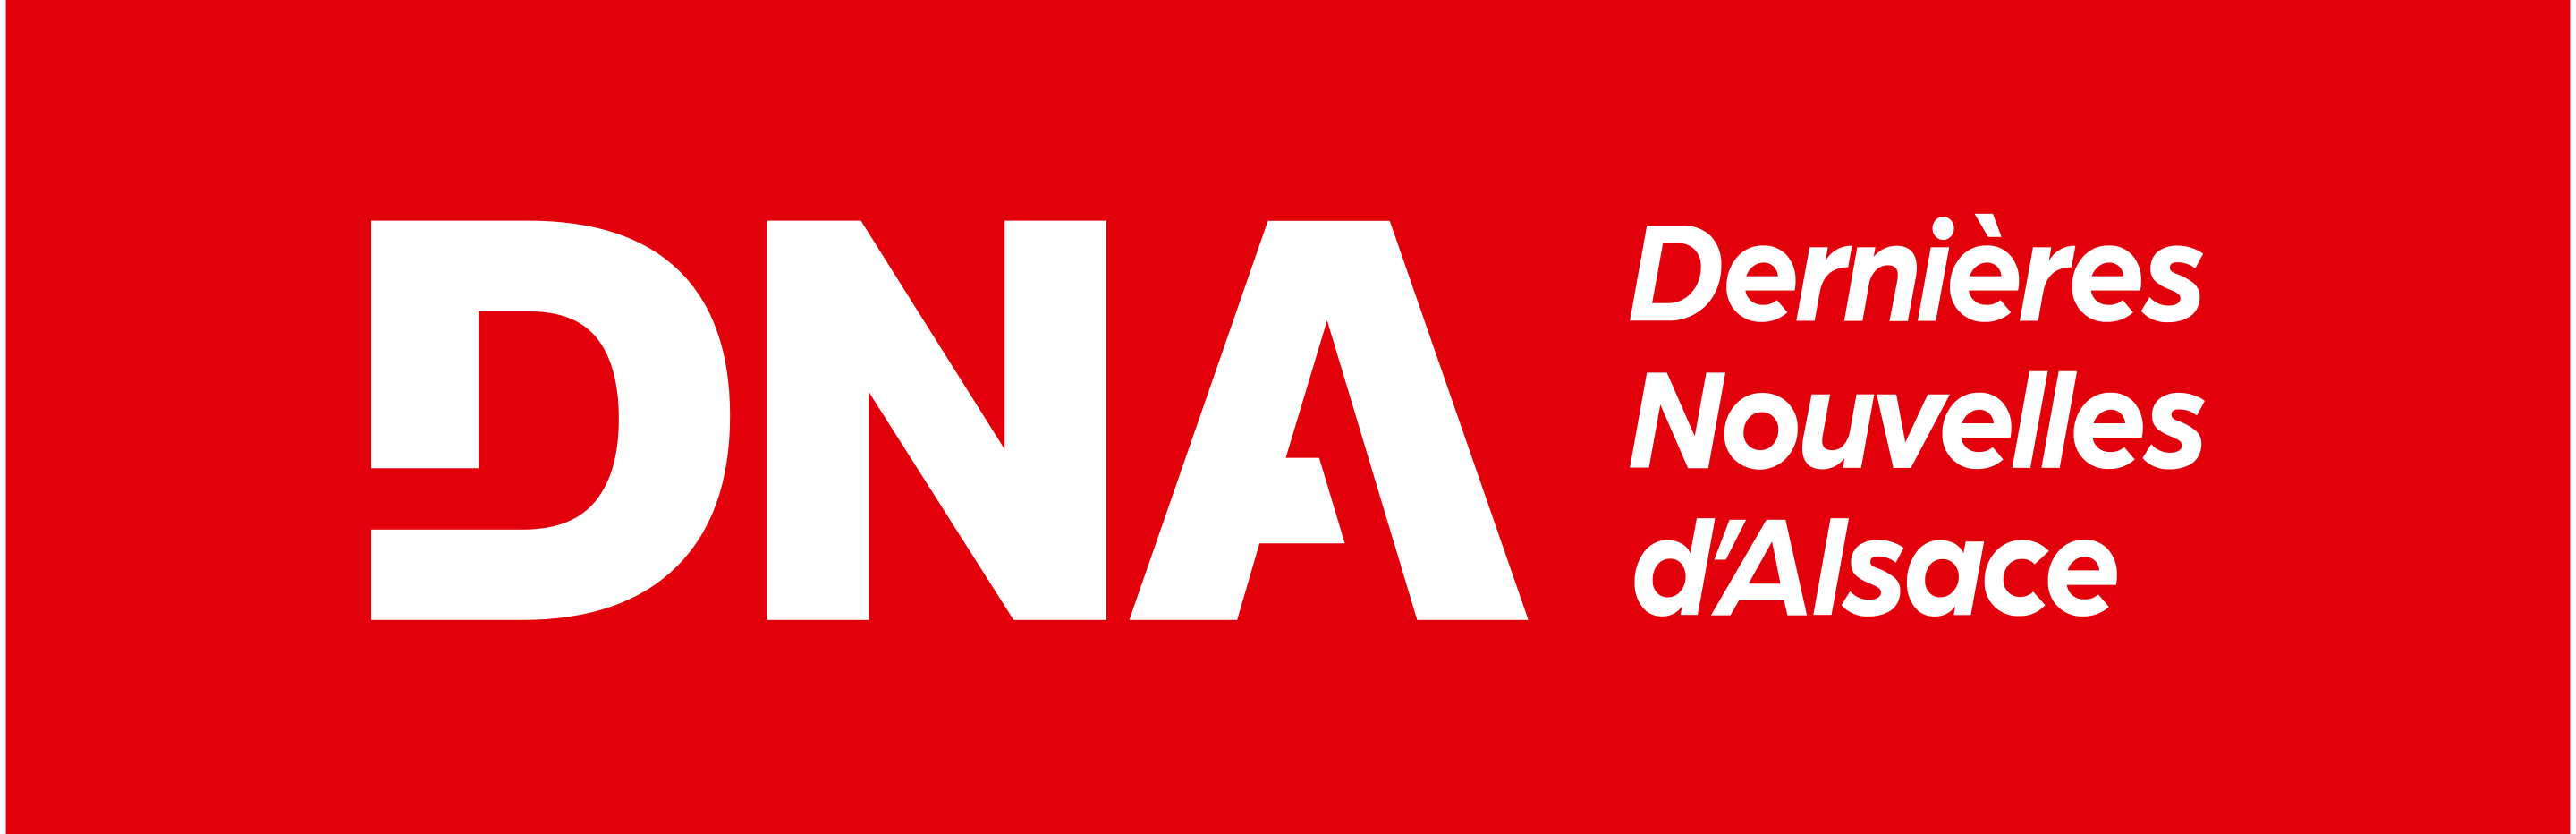 Logo du quotidien régional DNA, redirigeant vers un article parlant de beconnect